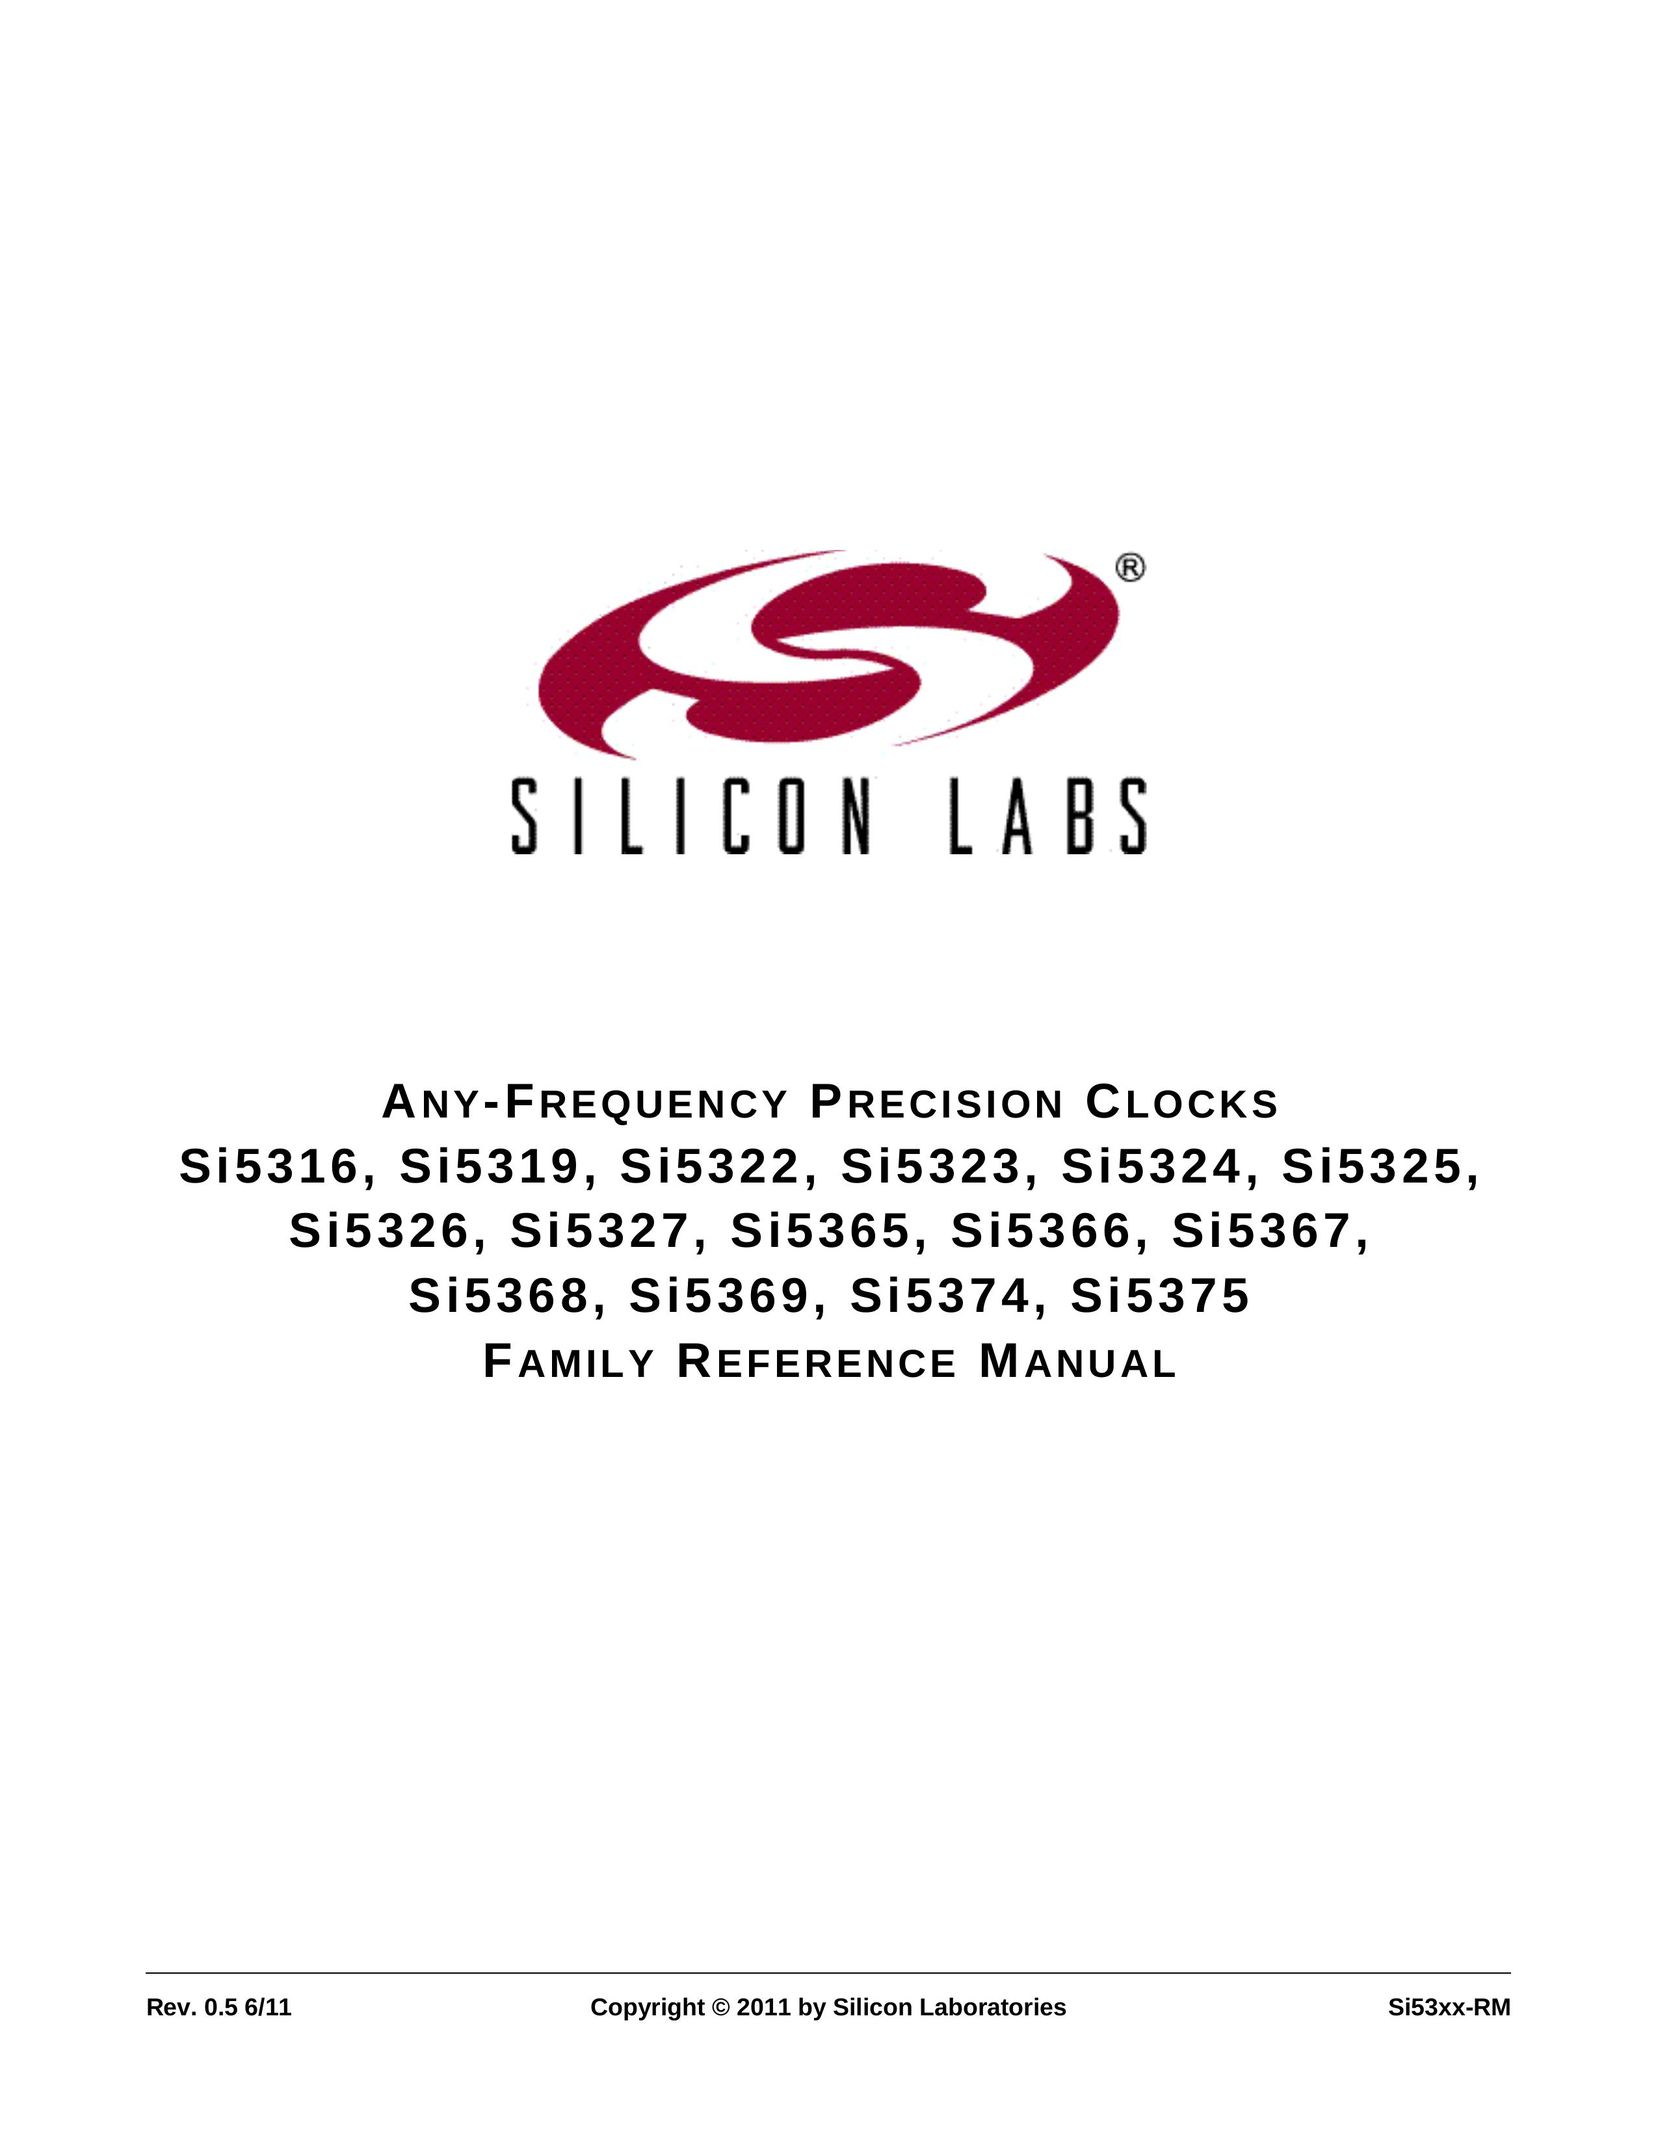 Silicon Laboratories SI5326 Clock User Manual